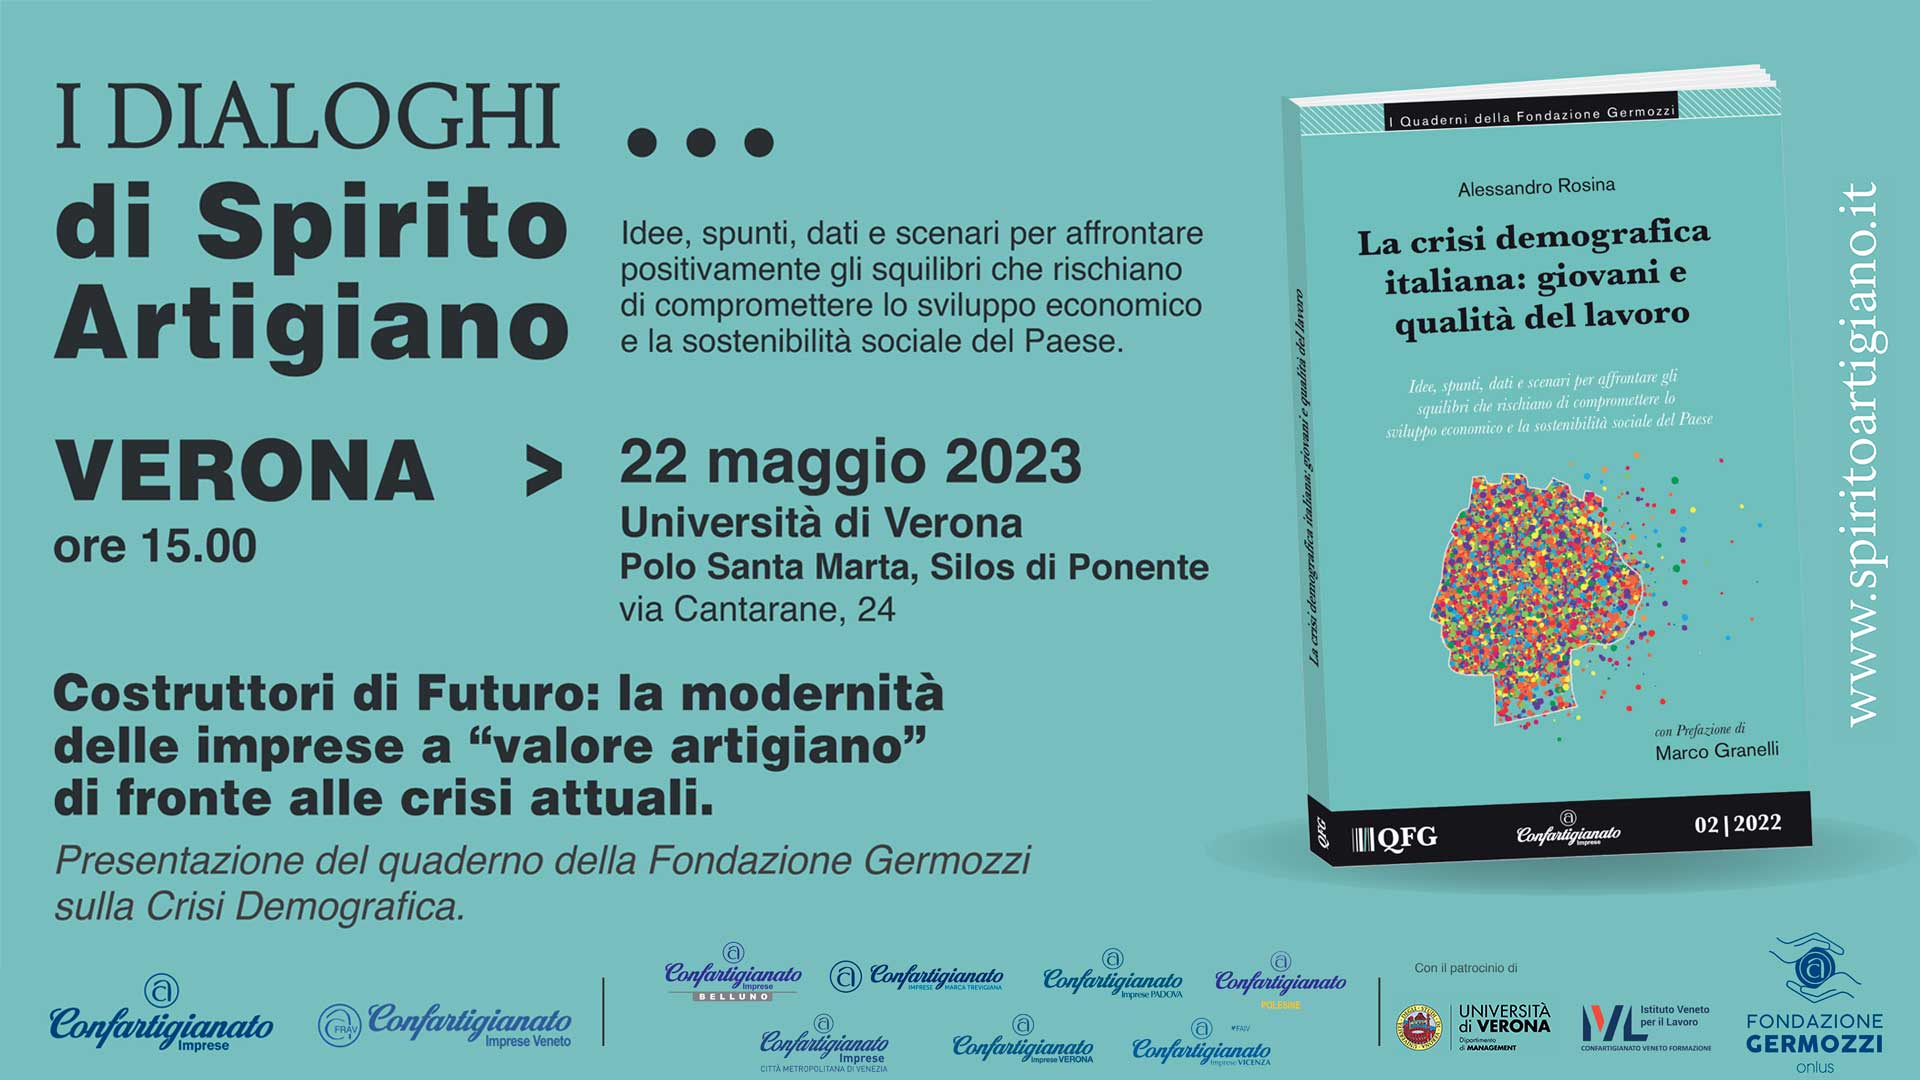 EVENTO – Il tour de ‘I Dialoghi di Spirito artigiano’ approda a Verona, 22 maggio: crisi demografica, giovani e qualità del lavoro. Iscriviti per partecipare